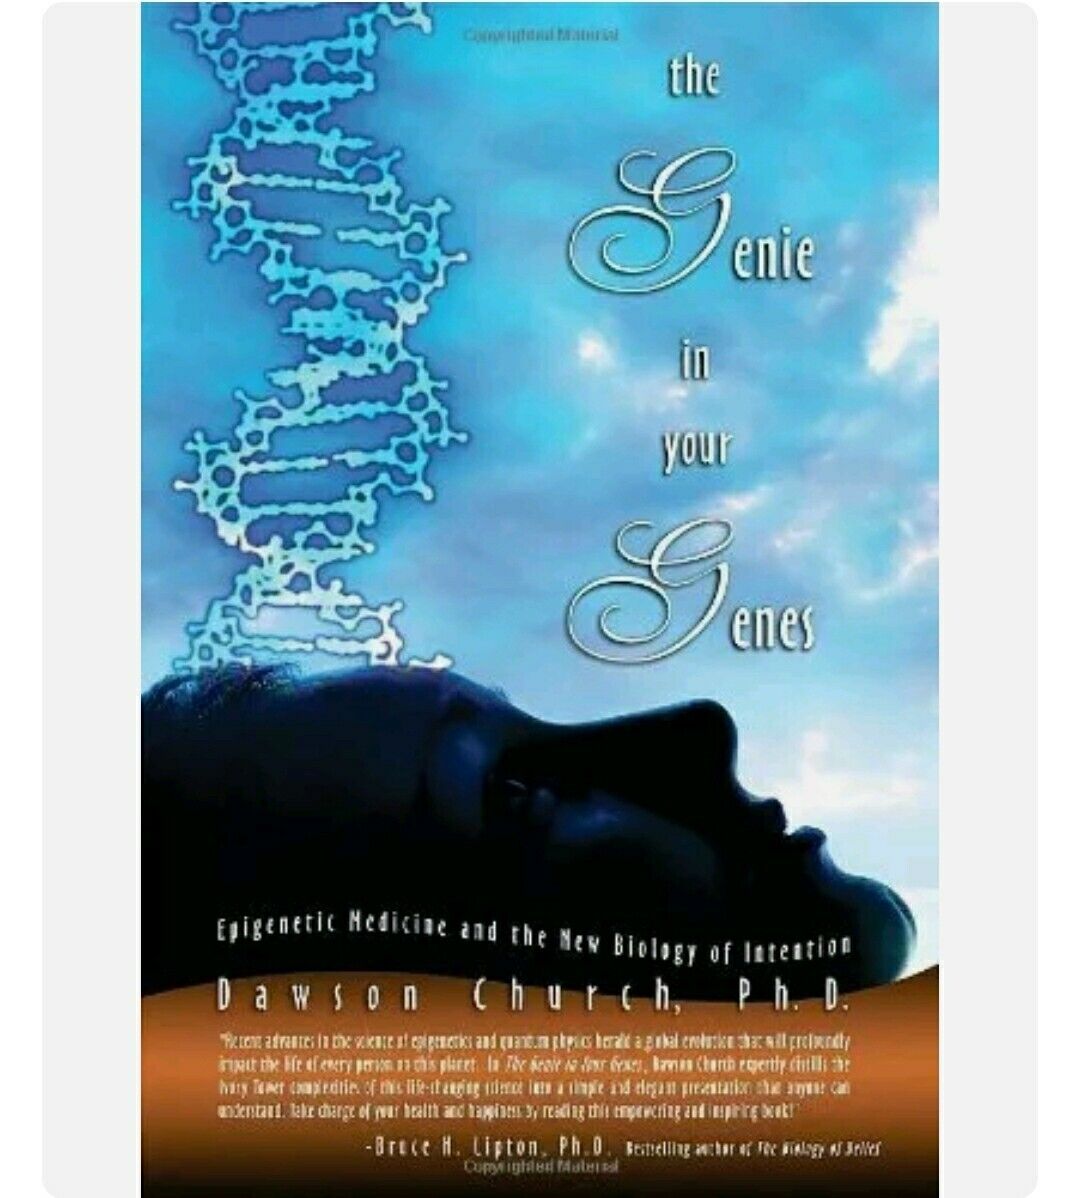 The Genie in Your Genes: Epigenetic Medicine and th... by Dawson Church Hardback